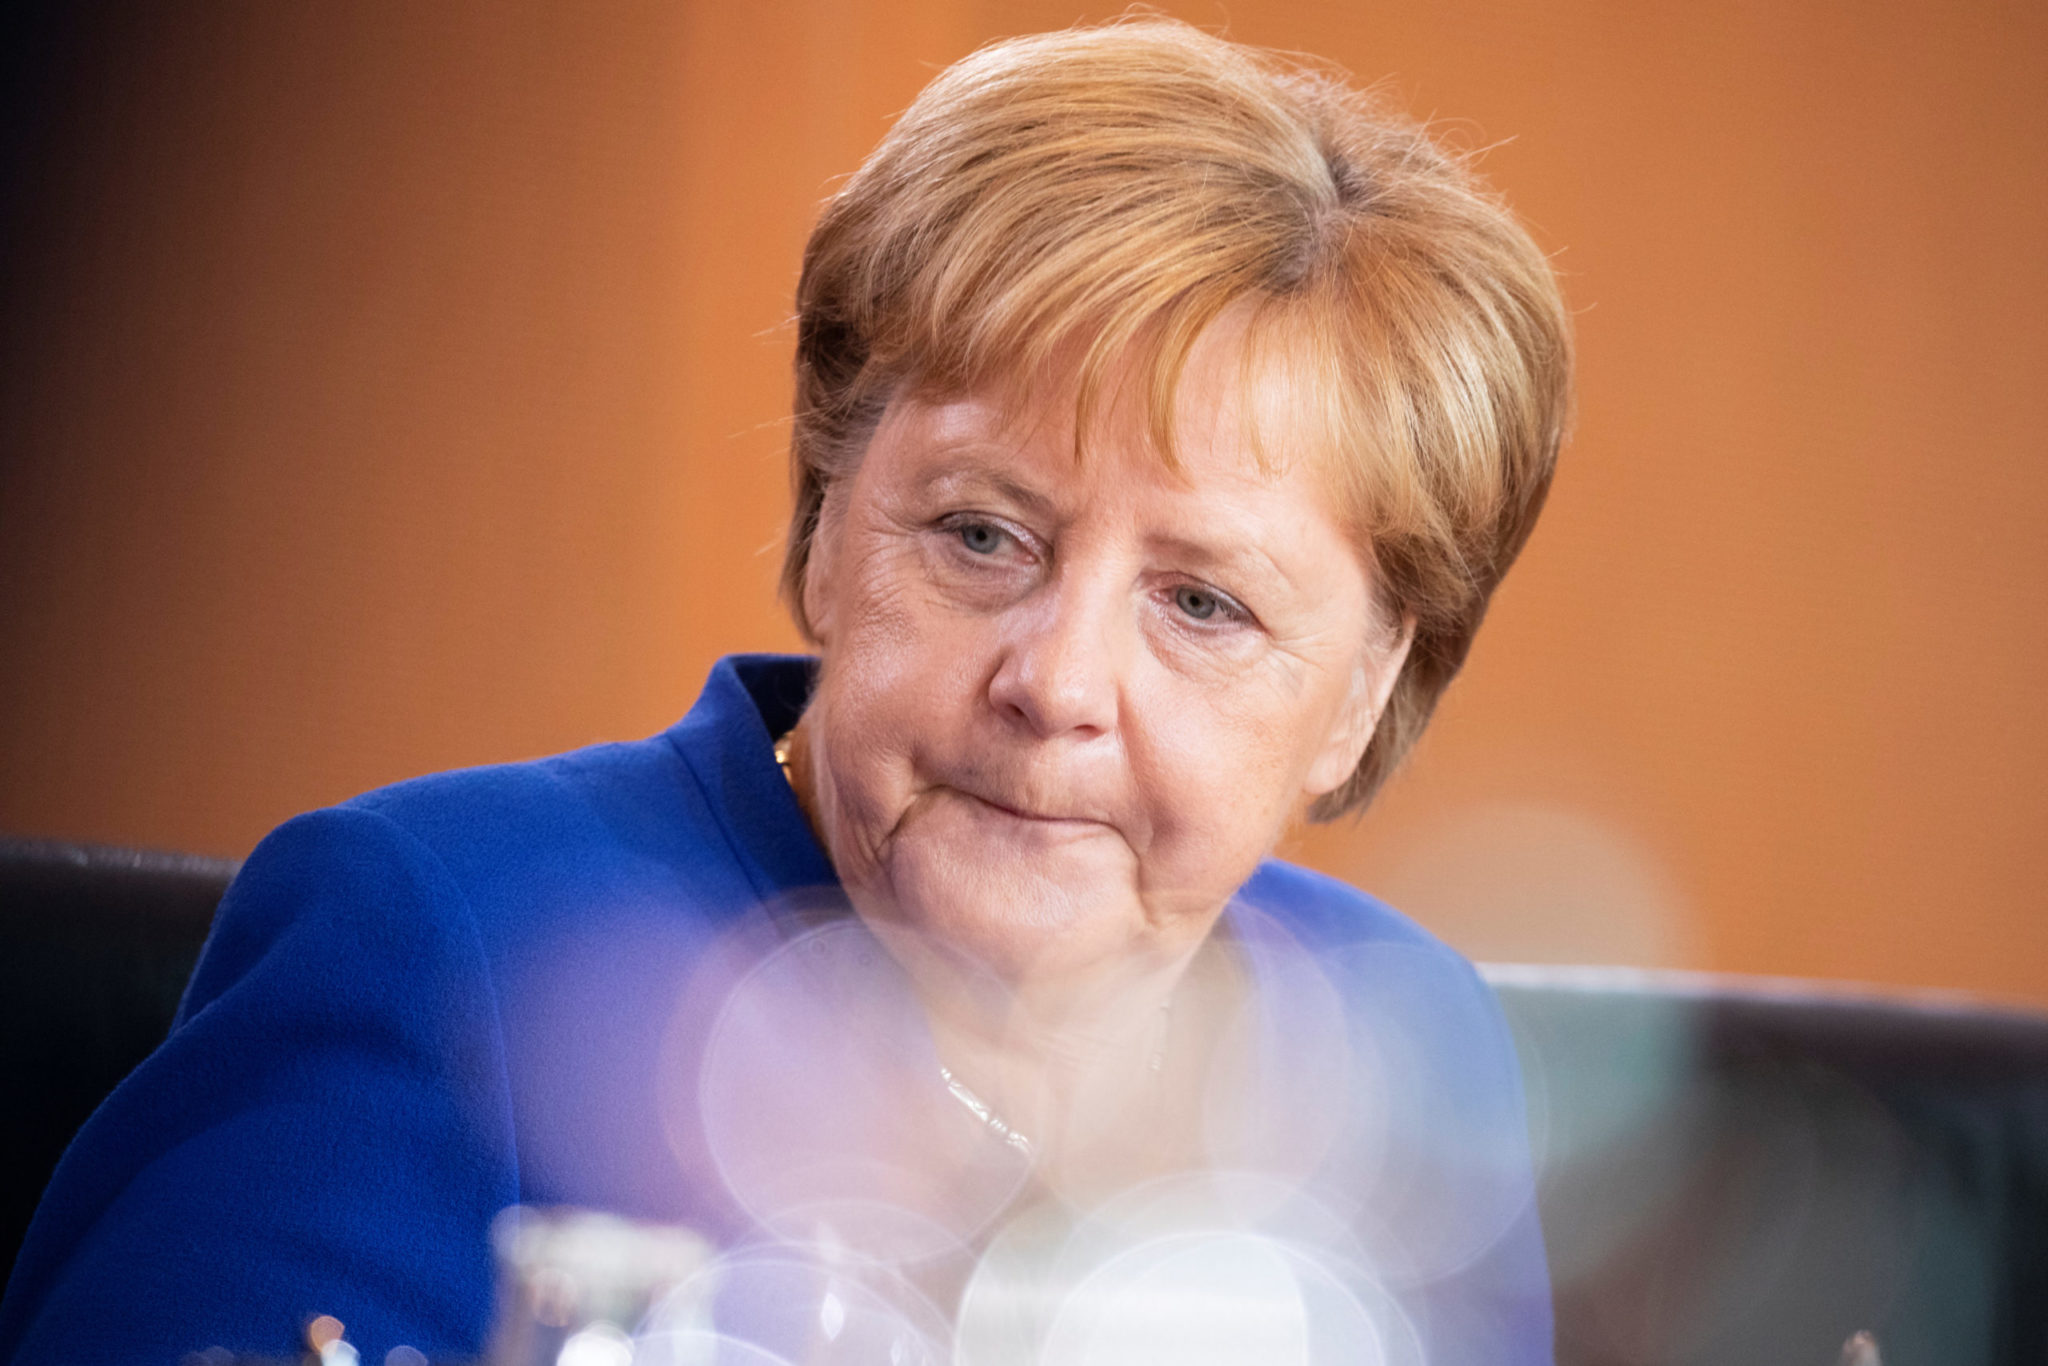 Alemanha deve ampliar lockdown até meados de fevereiro